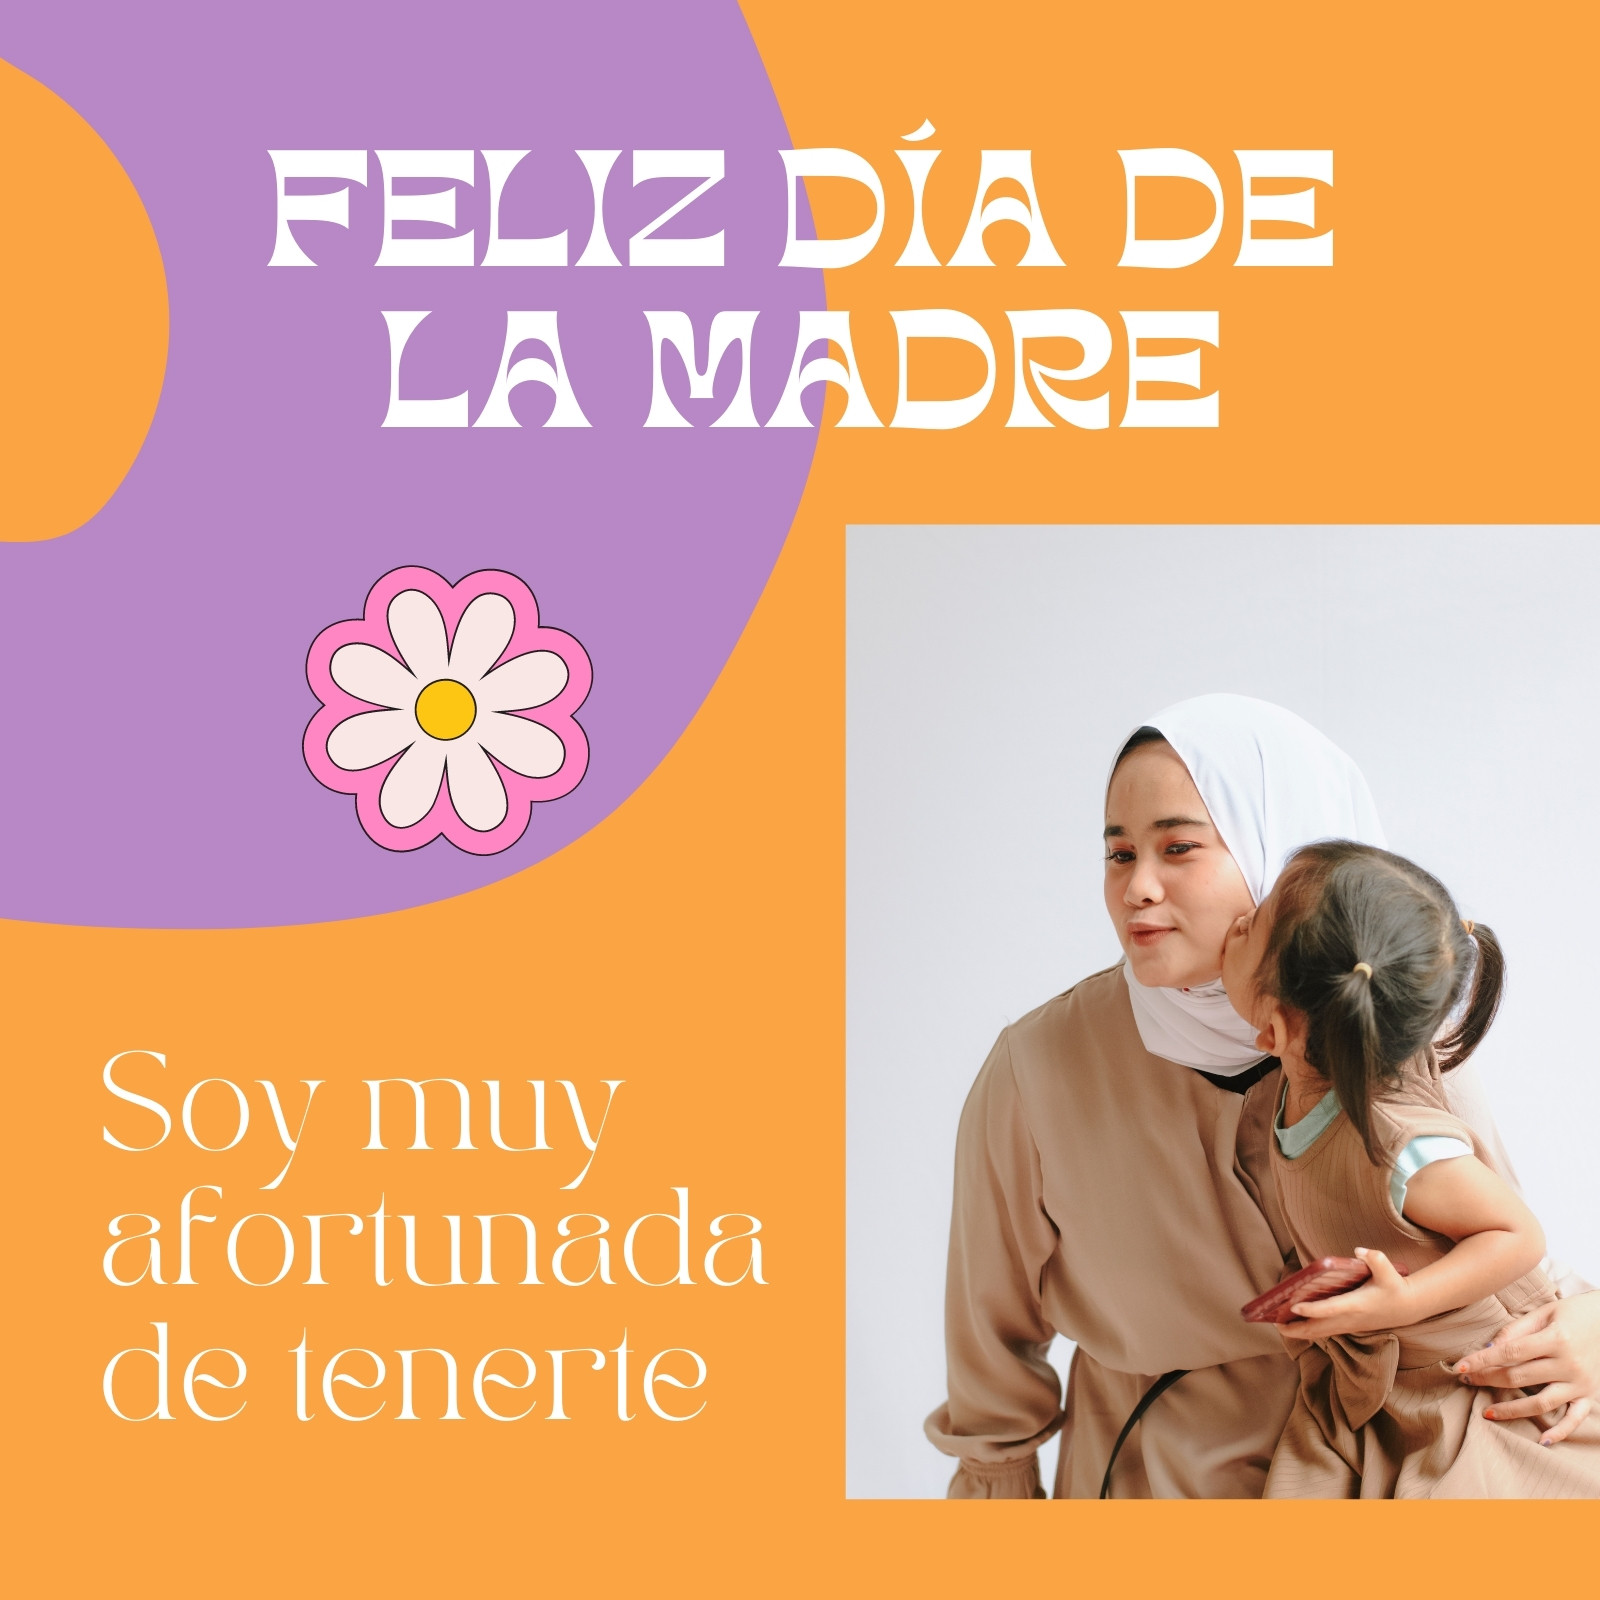 Página 5 - Post de Instagram con Frases para el Día de la Madre